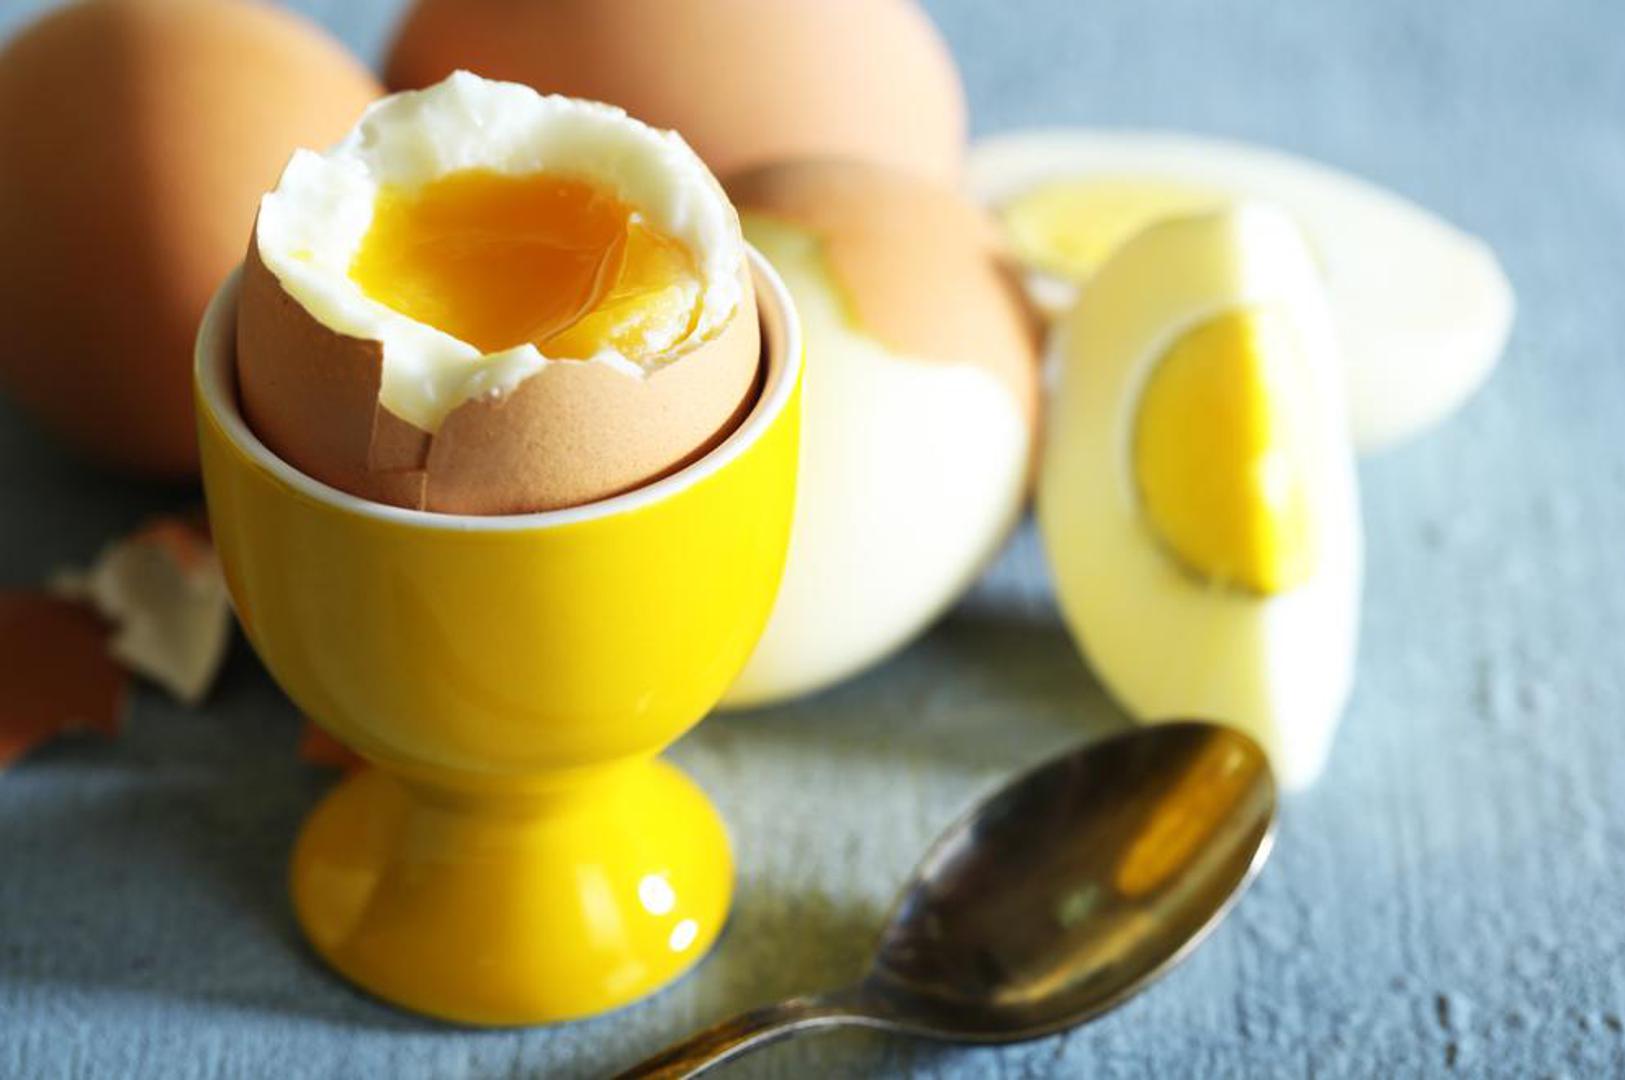 Jaja – odličan su izvor biotina, najvažnijeg vitamina B koji čini osnovu naše kože, noktiju i kose. Jaja također sadrže i selen koji štiti kožu od vanjskih oštećenja nastalih nakon izlaganja suncu.